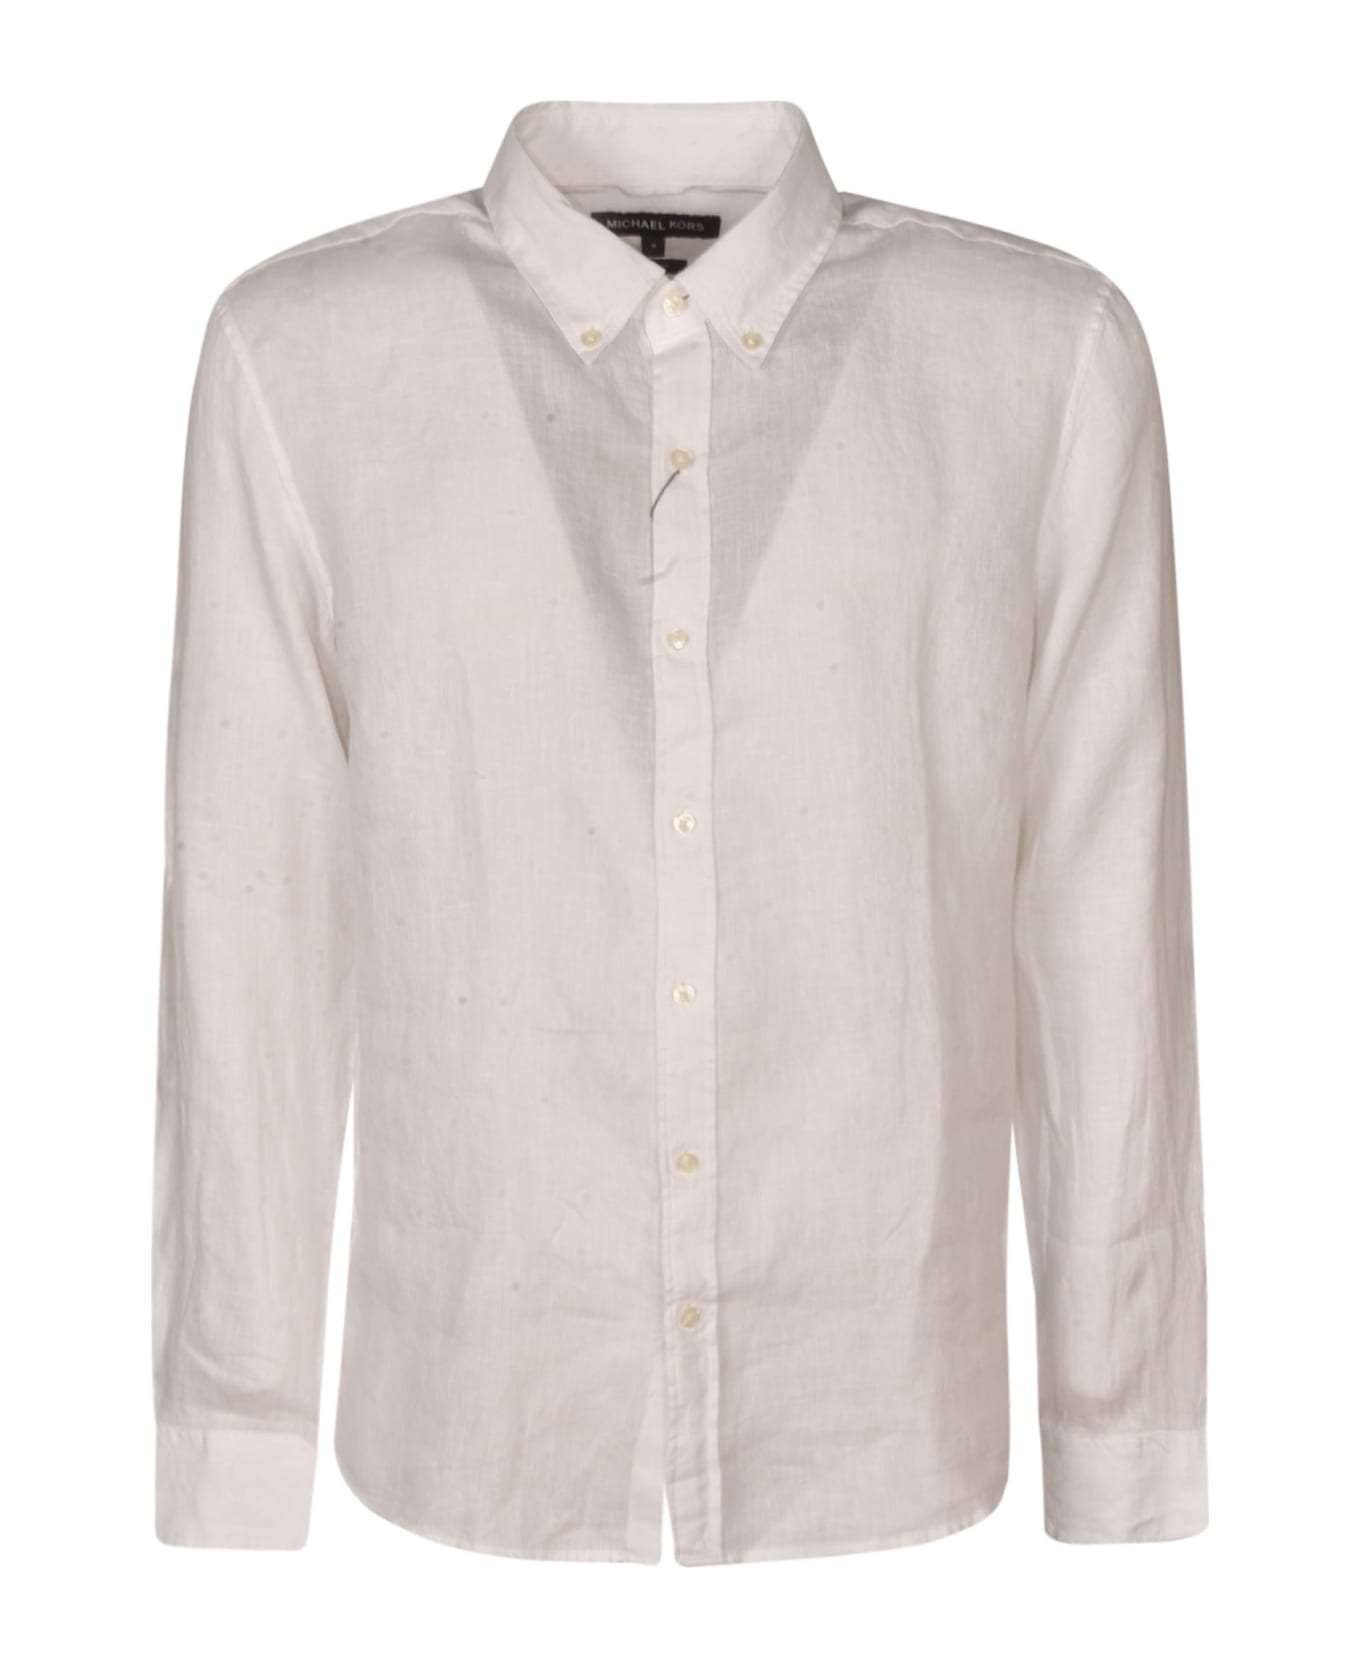 Michael Kors Classic Plain Shirt - White